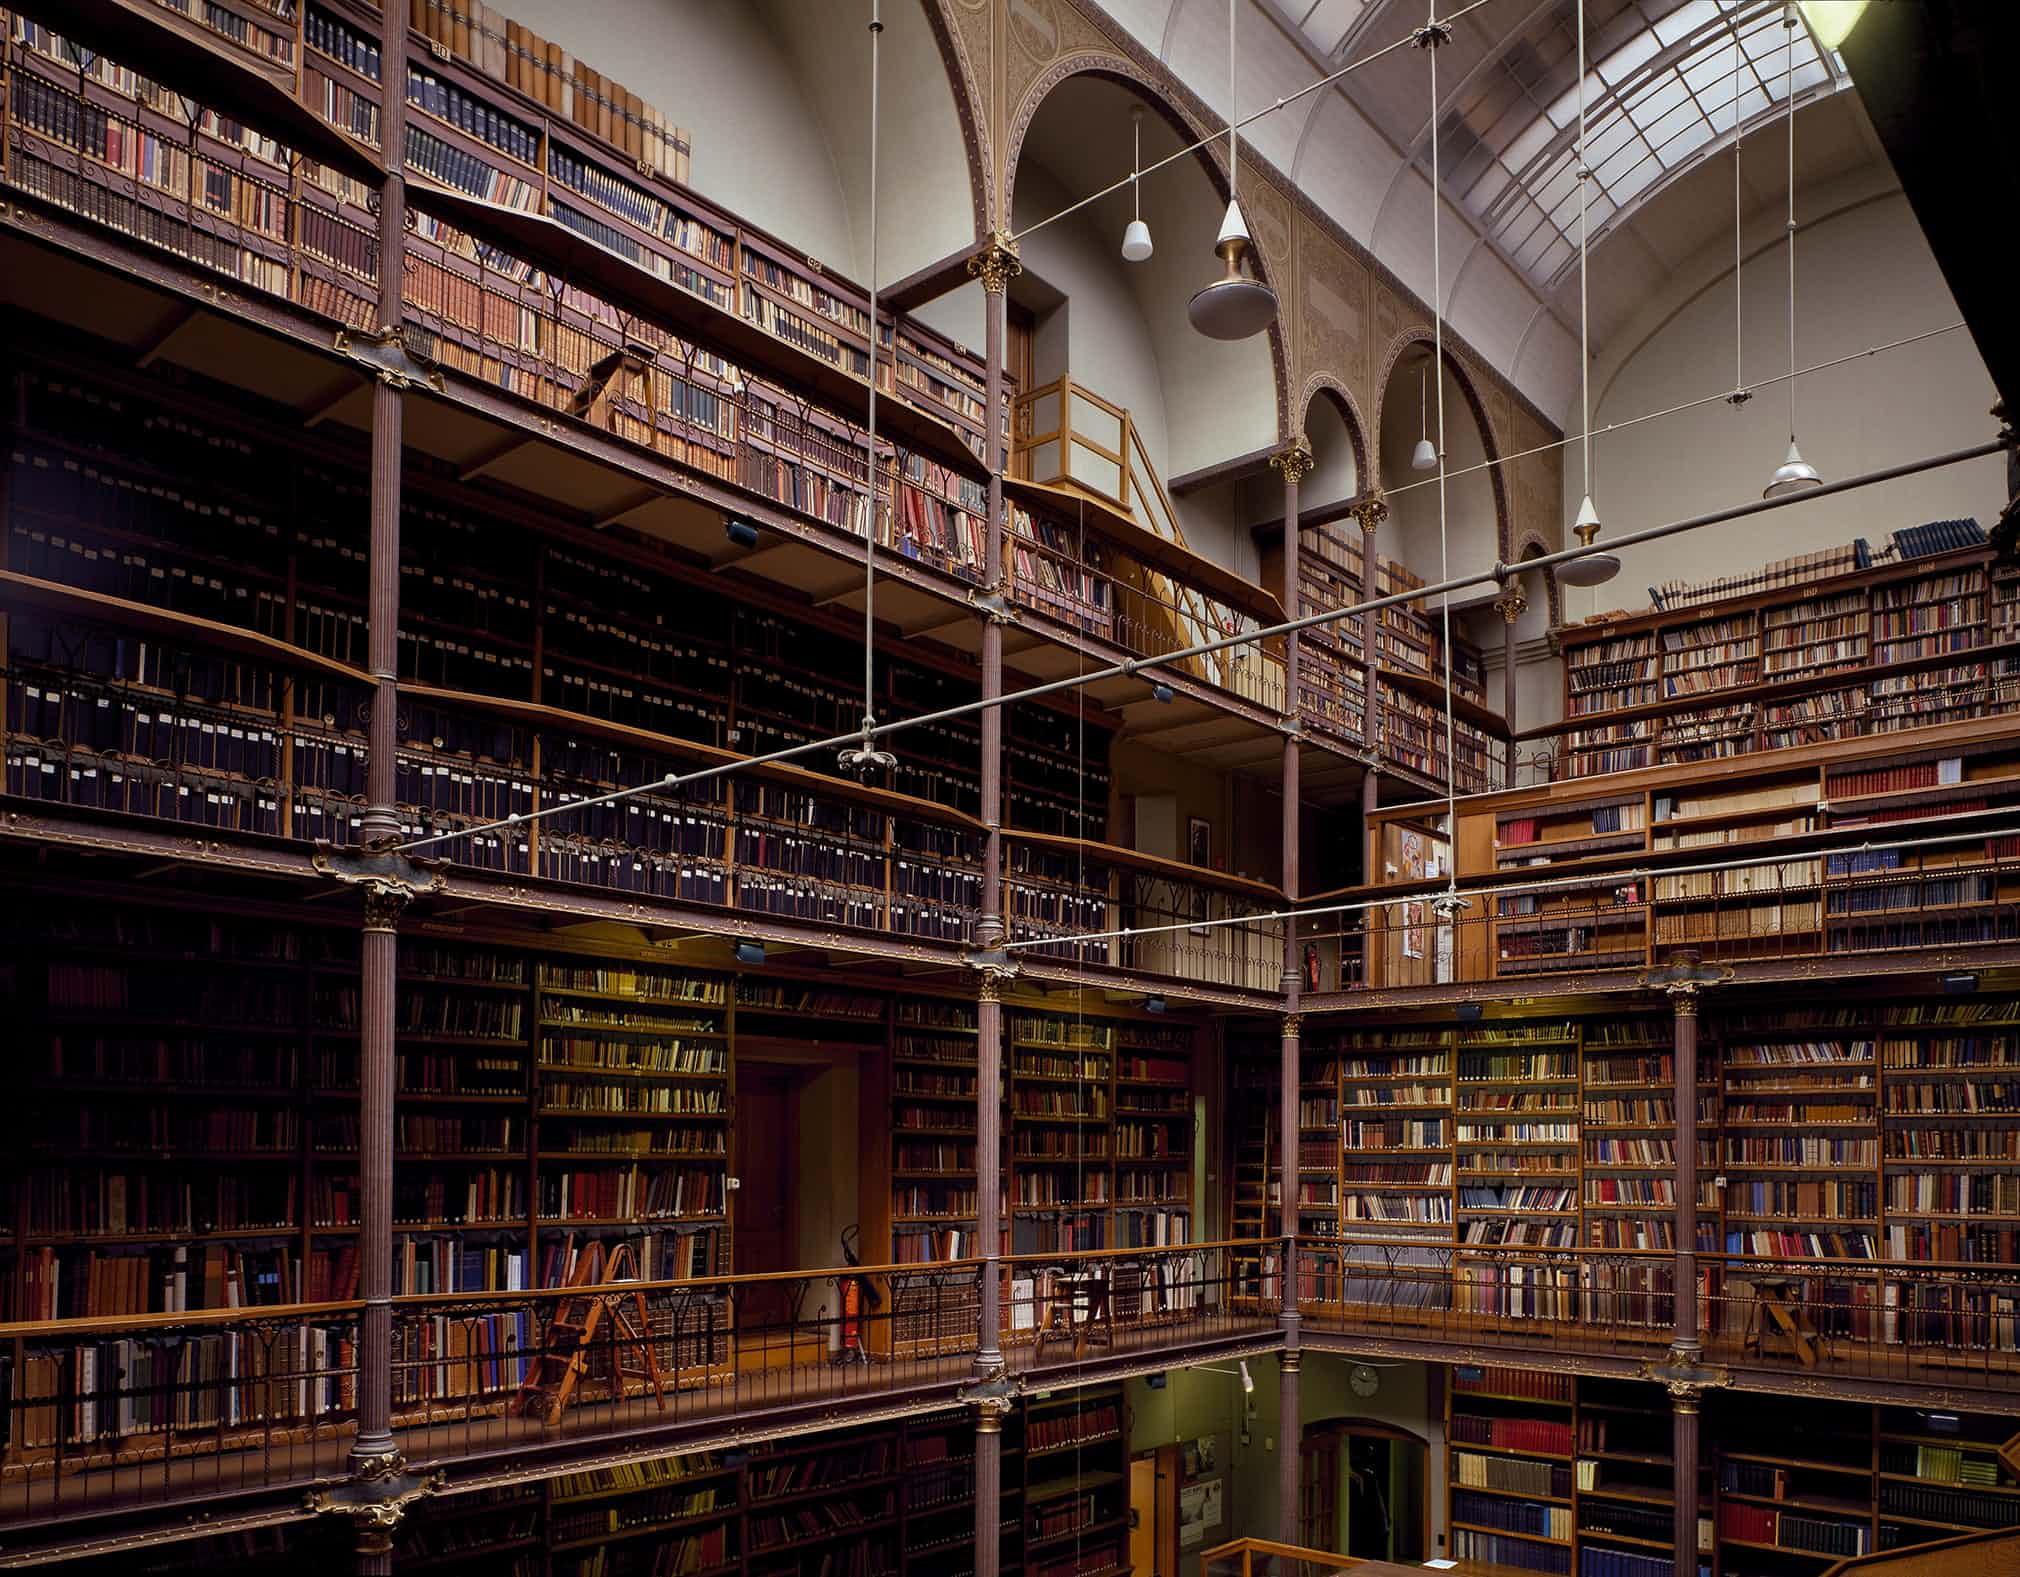 Ld library. Музей Рейксмузеум в Амстердаме библиотека. Самая красивая библиотека в мире. Самые красивые библиотеки.